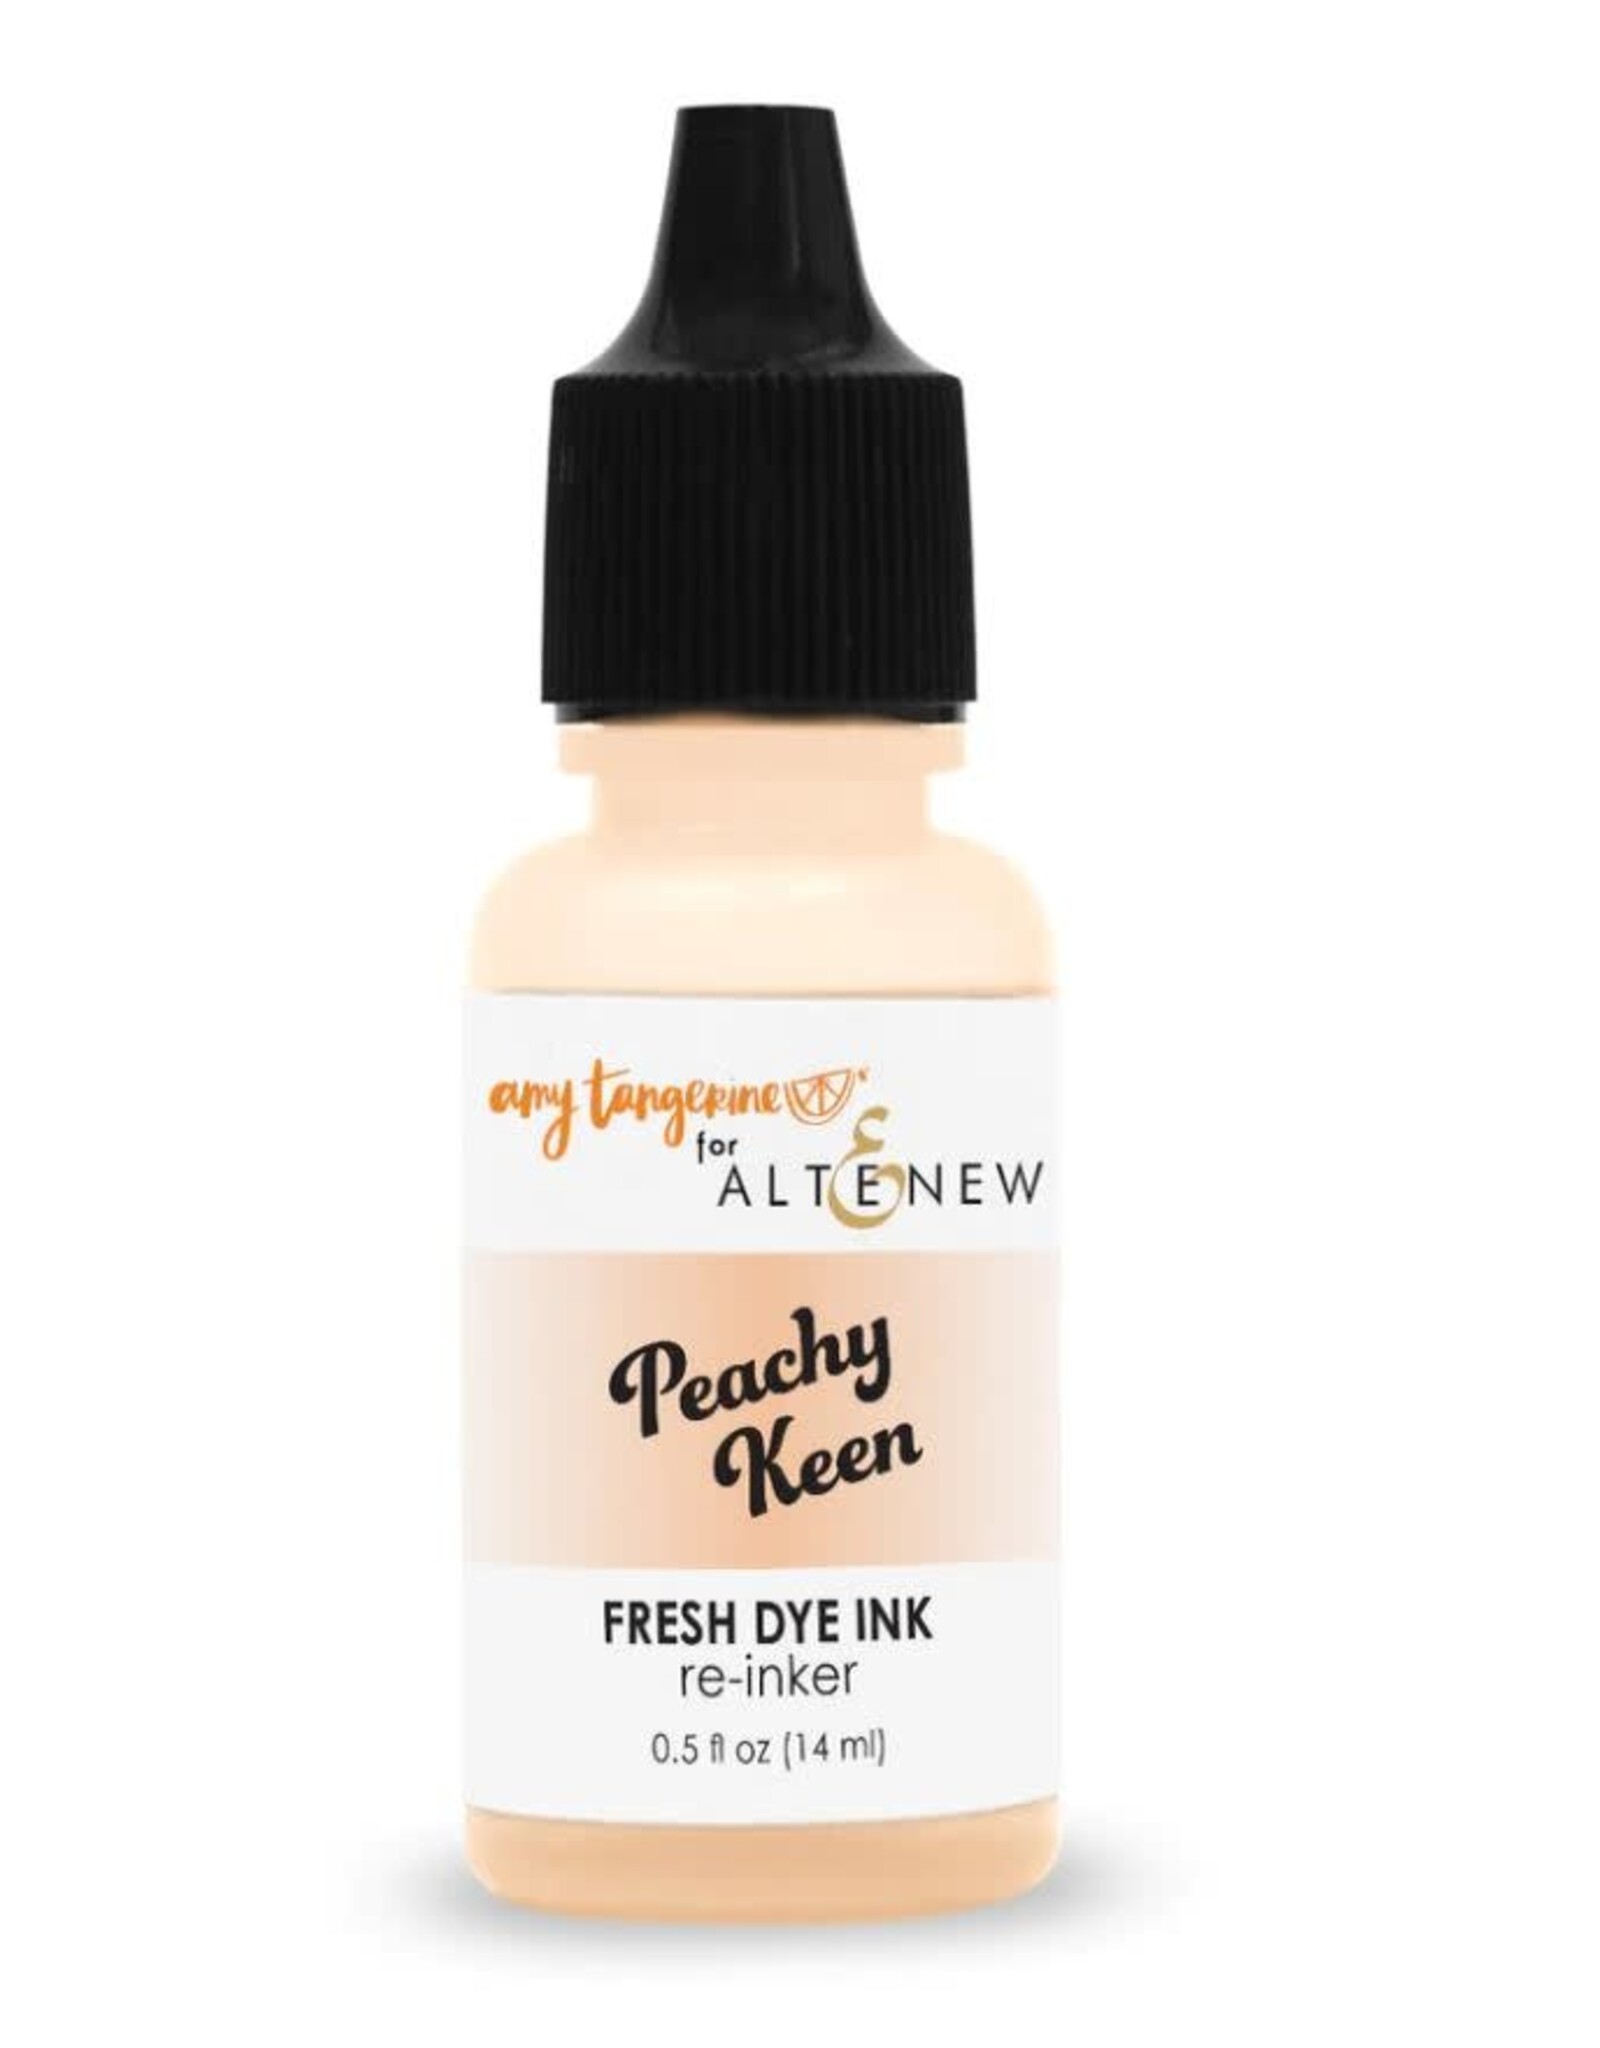 ALTENEW Amy Tangerine for Altenew- Summer Dreams Fresh Dye Ink Re-inker - Peachy Keen